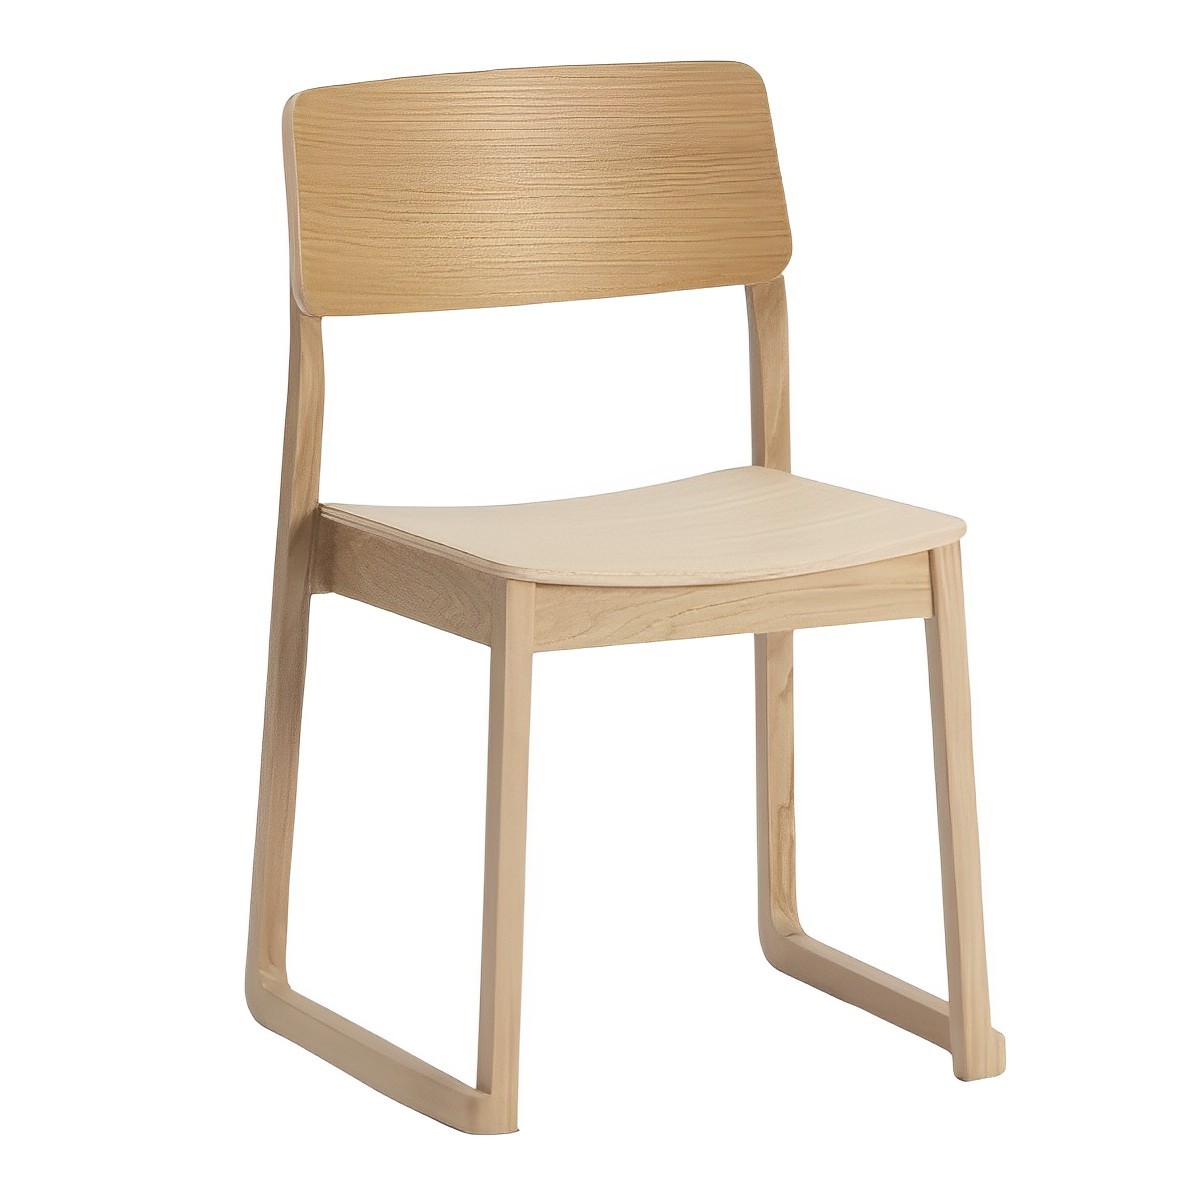 Sori Chair - Wood Seat